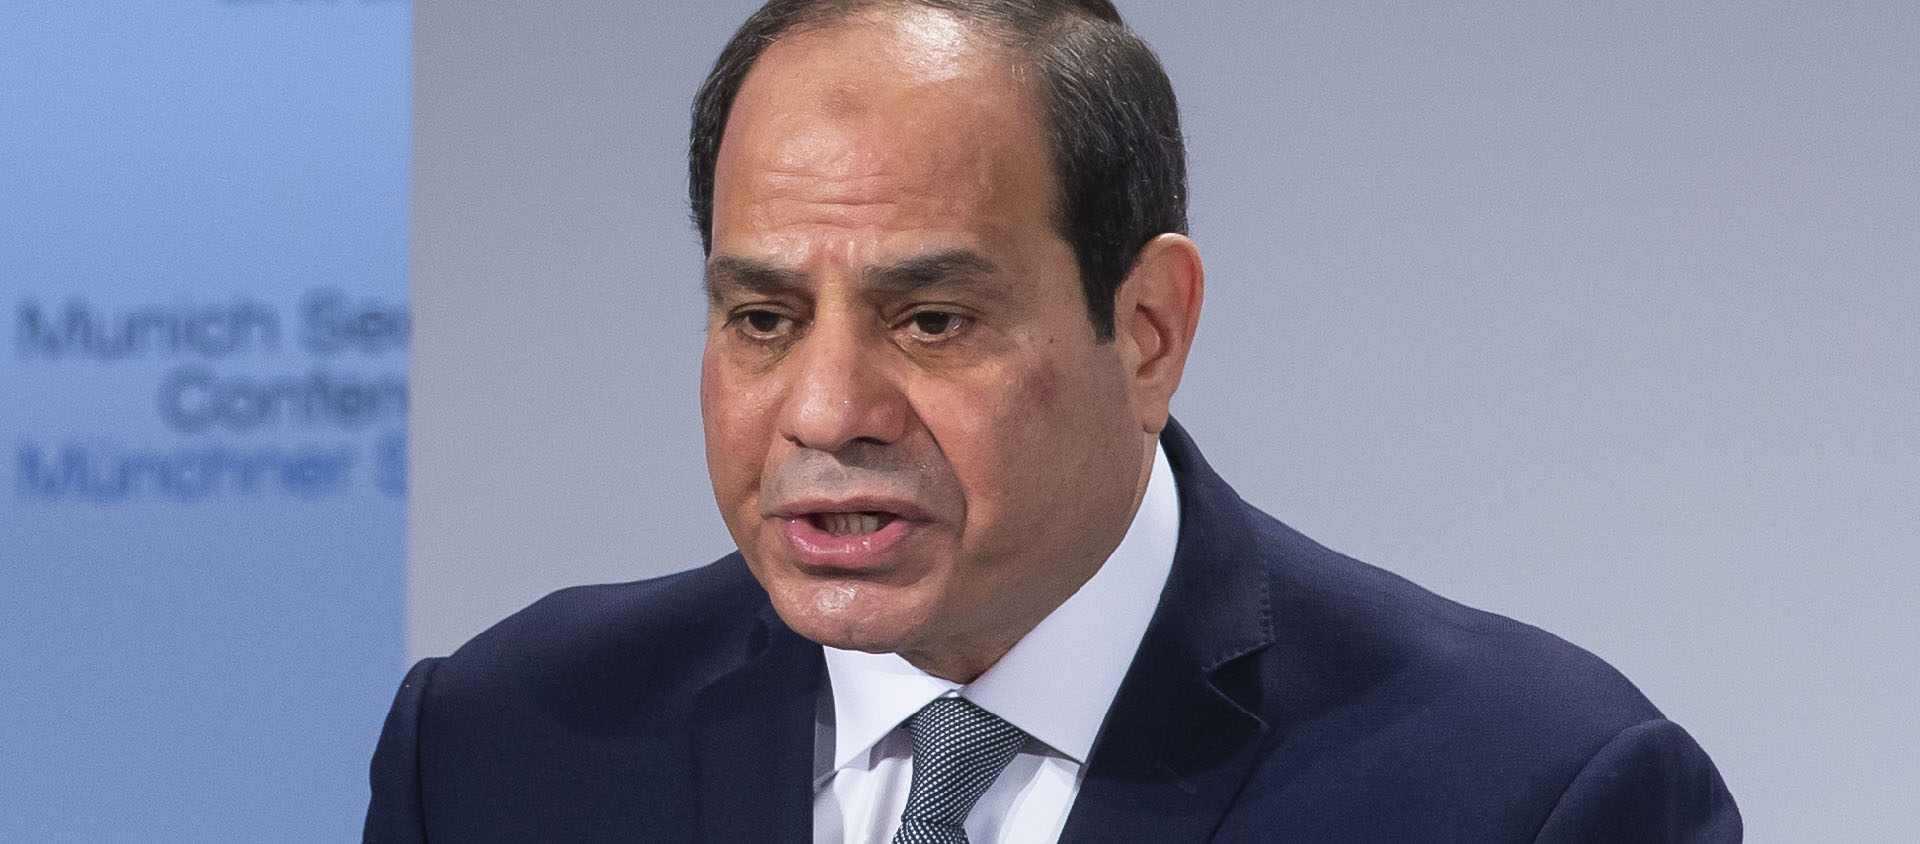 Le président égyptien a nommé un chrétien copte à la tête de la Haute Cour Constitutionnelle du pays | © Wikimedia/Hildenbrand /MSC/CC BY 3.0 DE